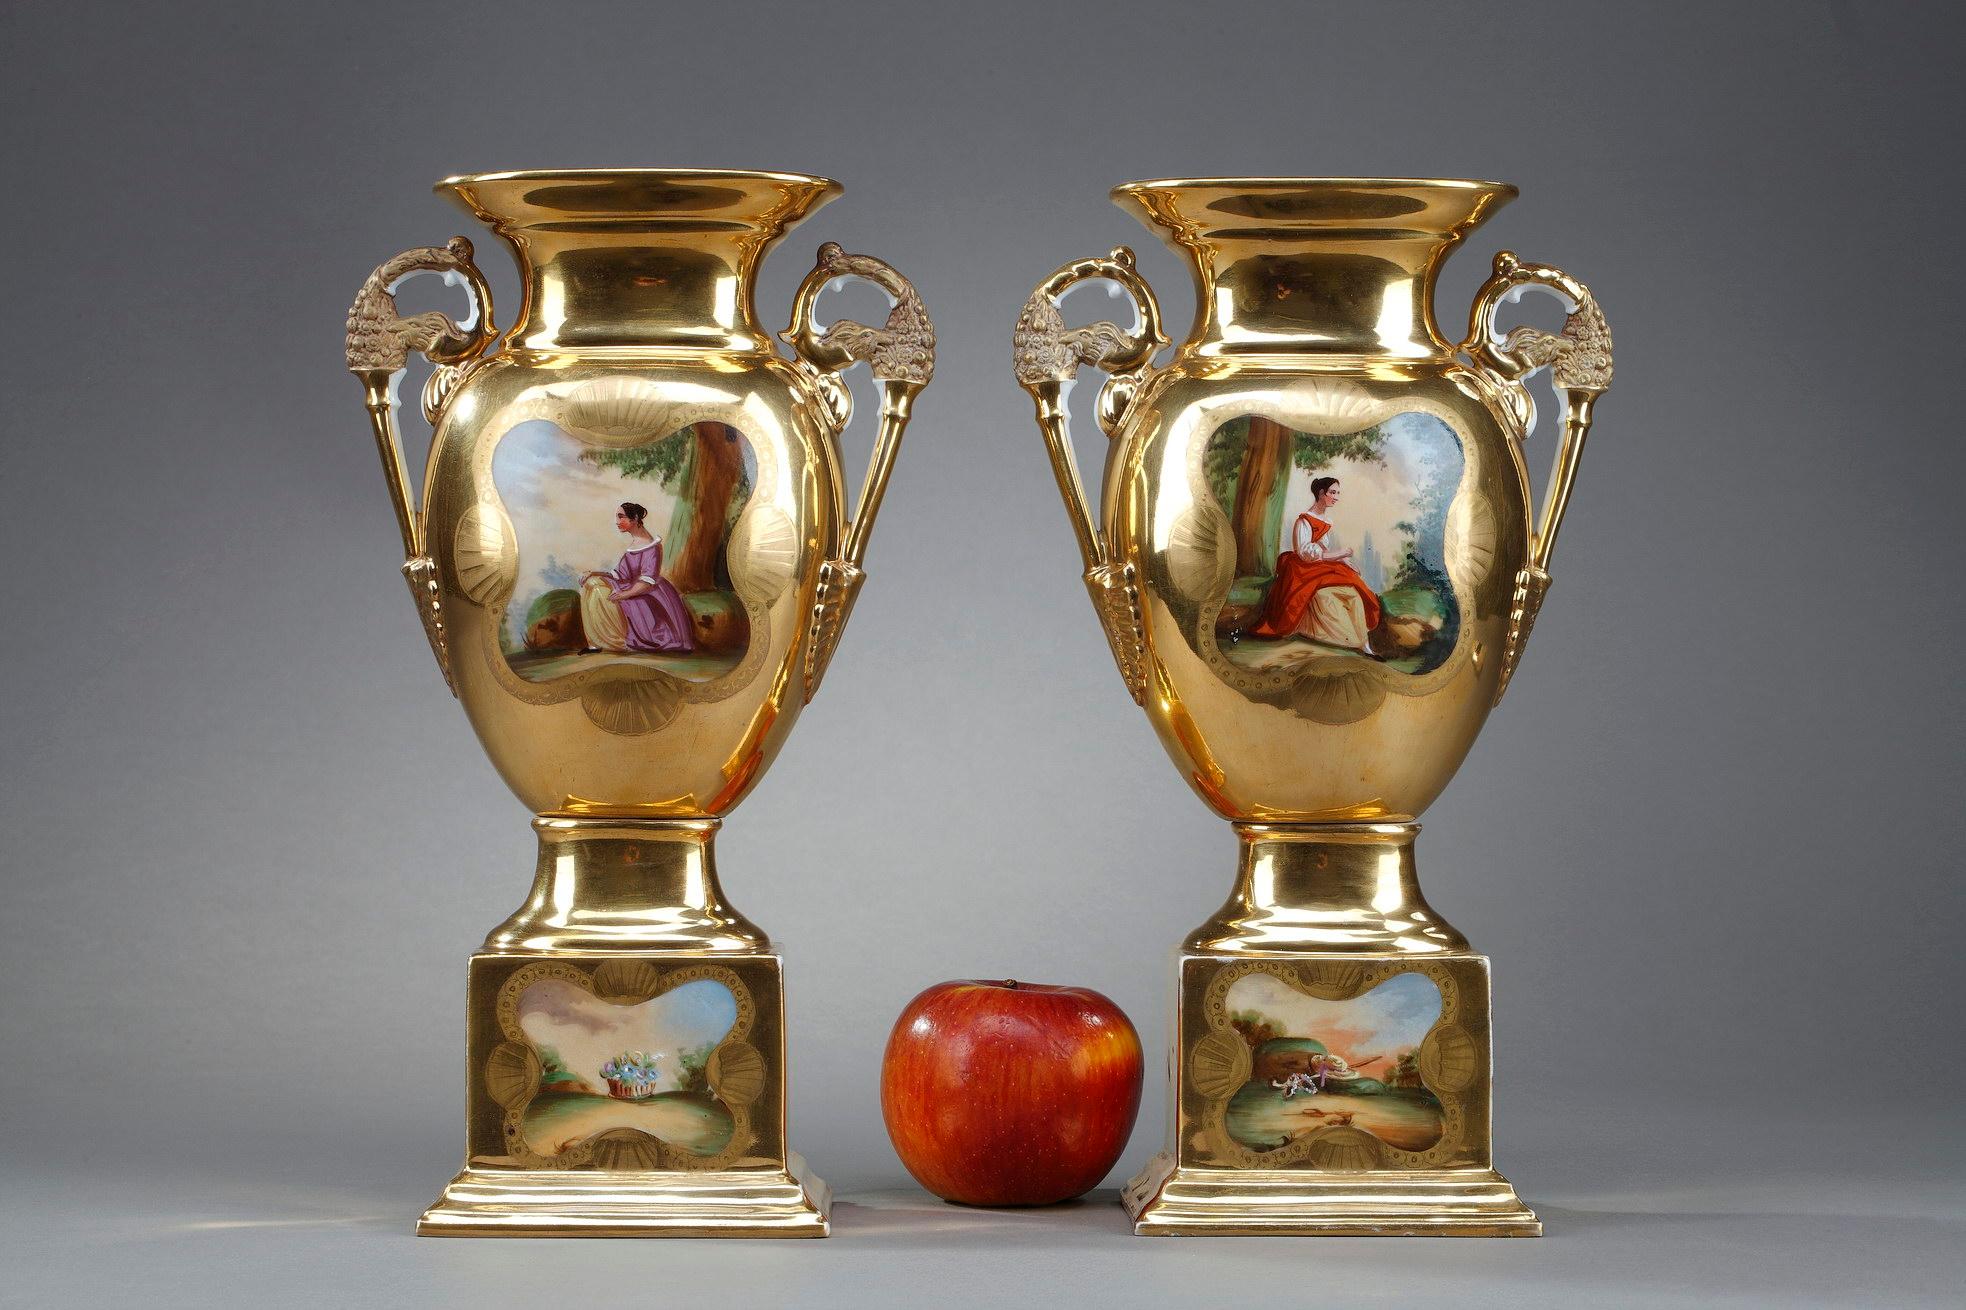 Paar Vasen der Louis-Philippe-Periode in Pariser Porzellan mit goldenen Highlights und polychrome Dekoration in Reserven von Elegantes, die zwei junge Frauen in einer Waldumgebung, in Sommerfarben gekleidet. Die Griffe sind mit floralen Motiven in